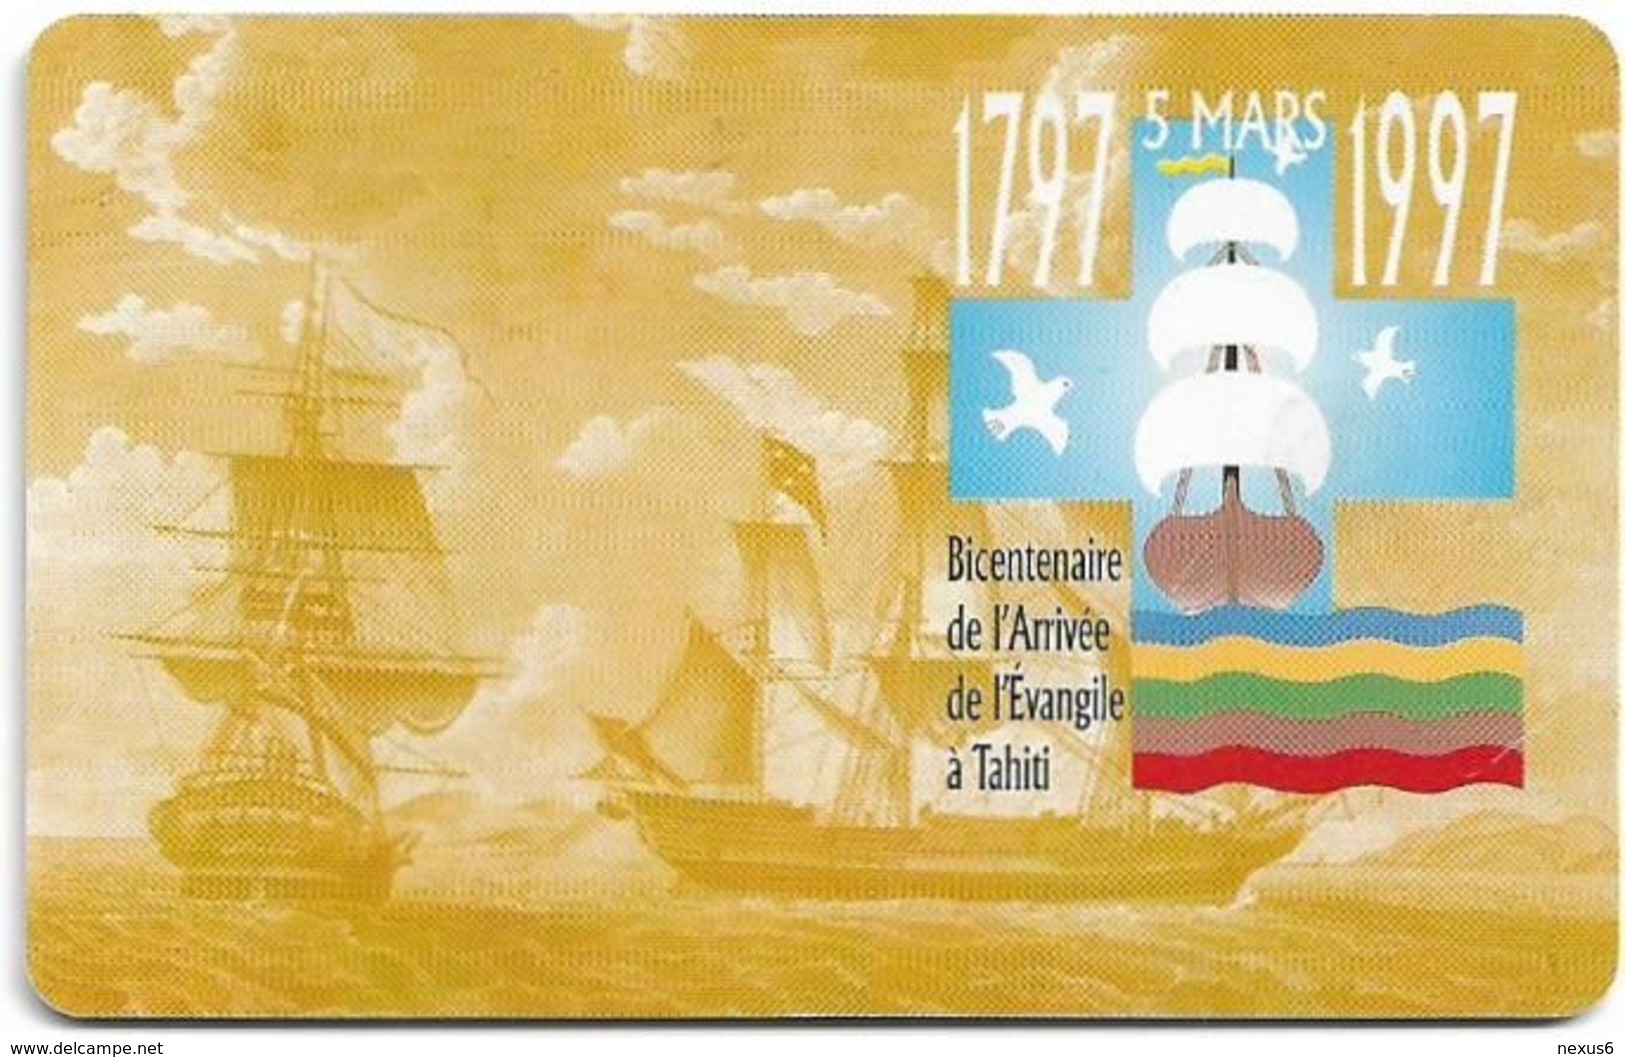 French Polynesia - OPT - Bicentenaire De L'Arrivée #2 - Gem1A Symmetr. Black, 03.1997, 30Units, 30.000ex, Used - Polynésie Française